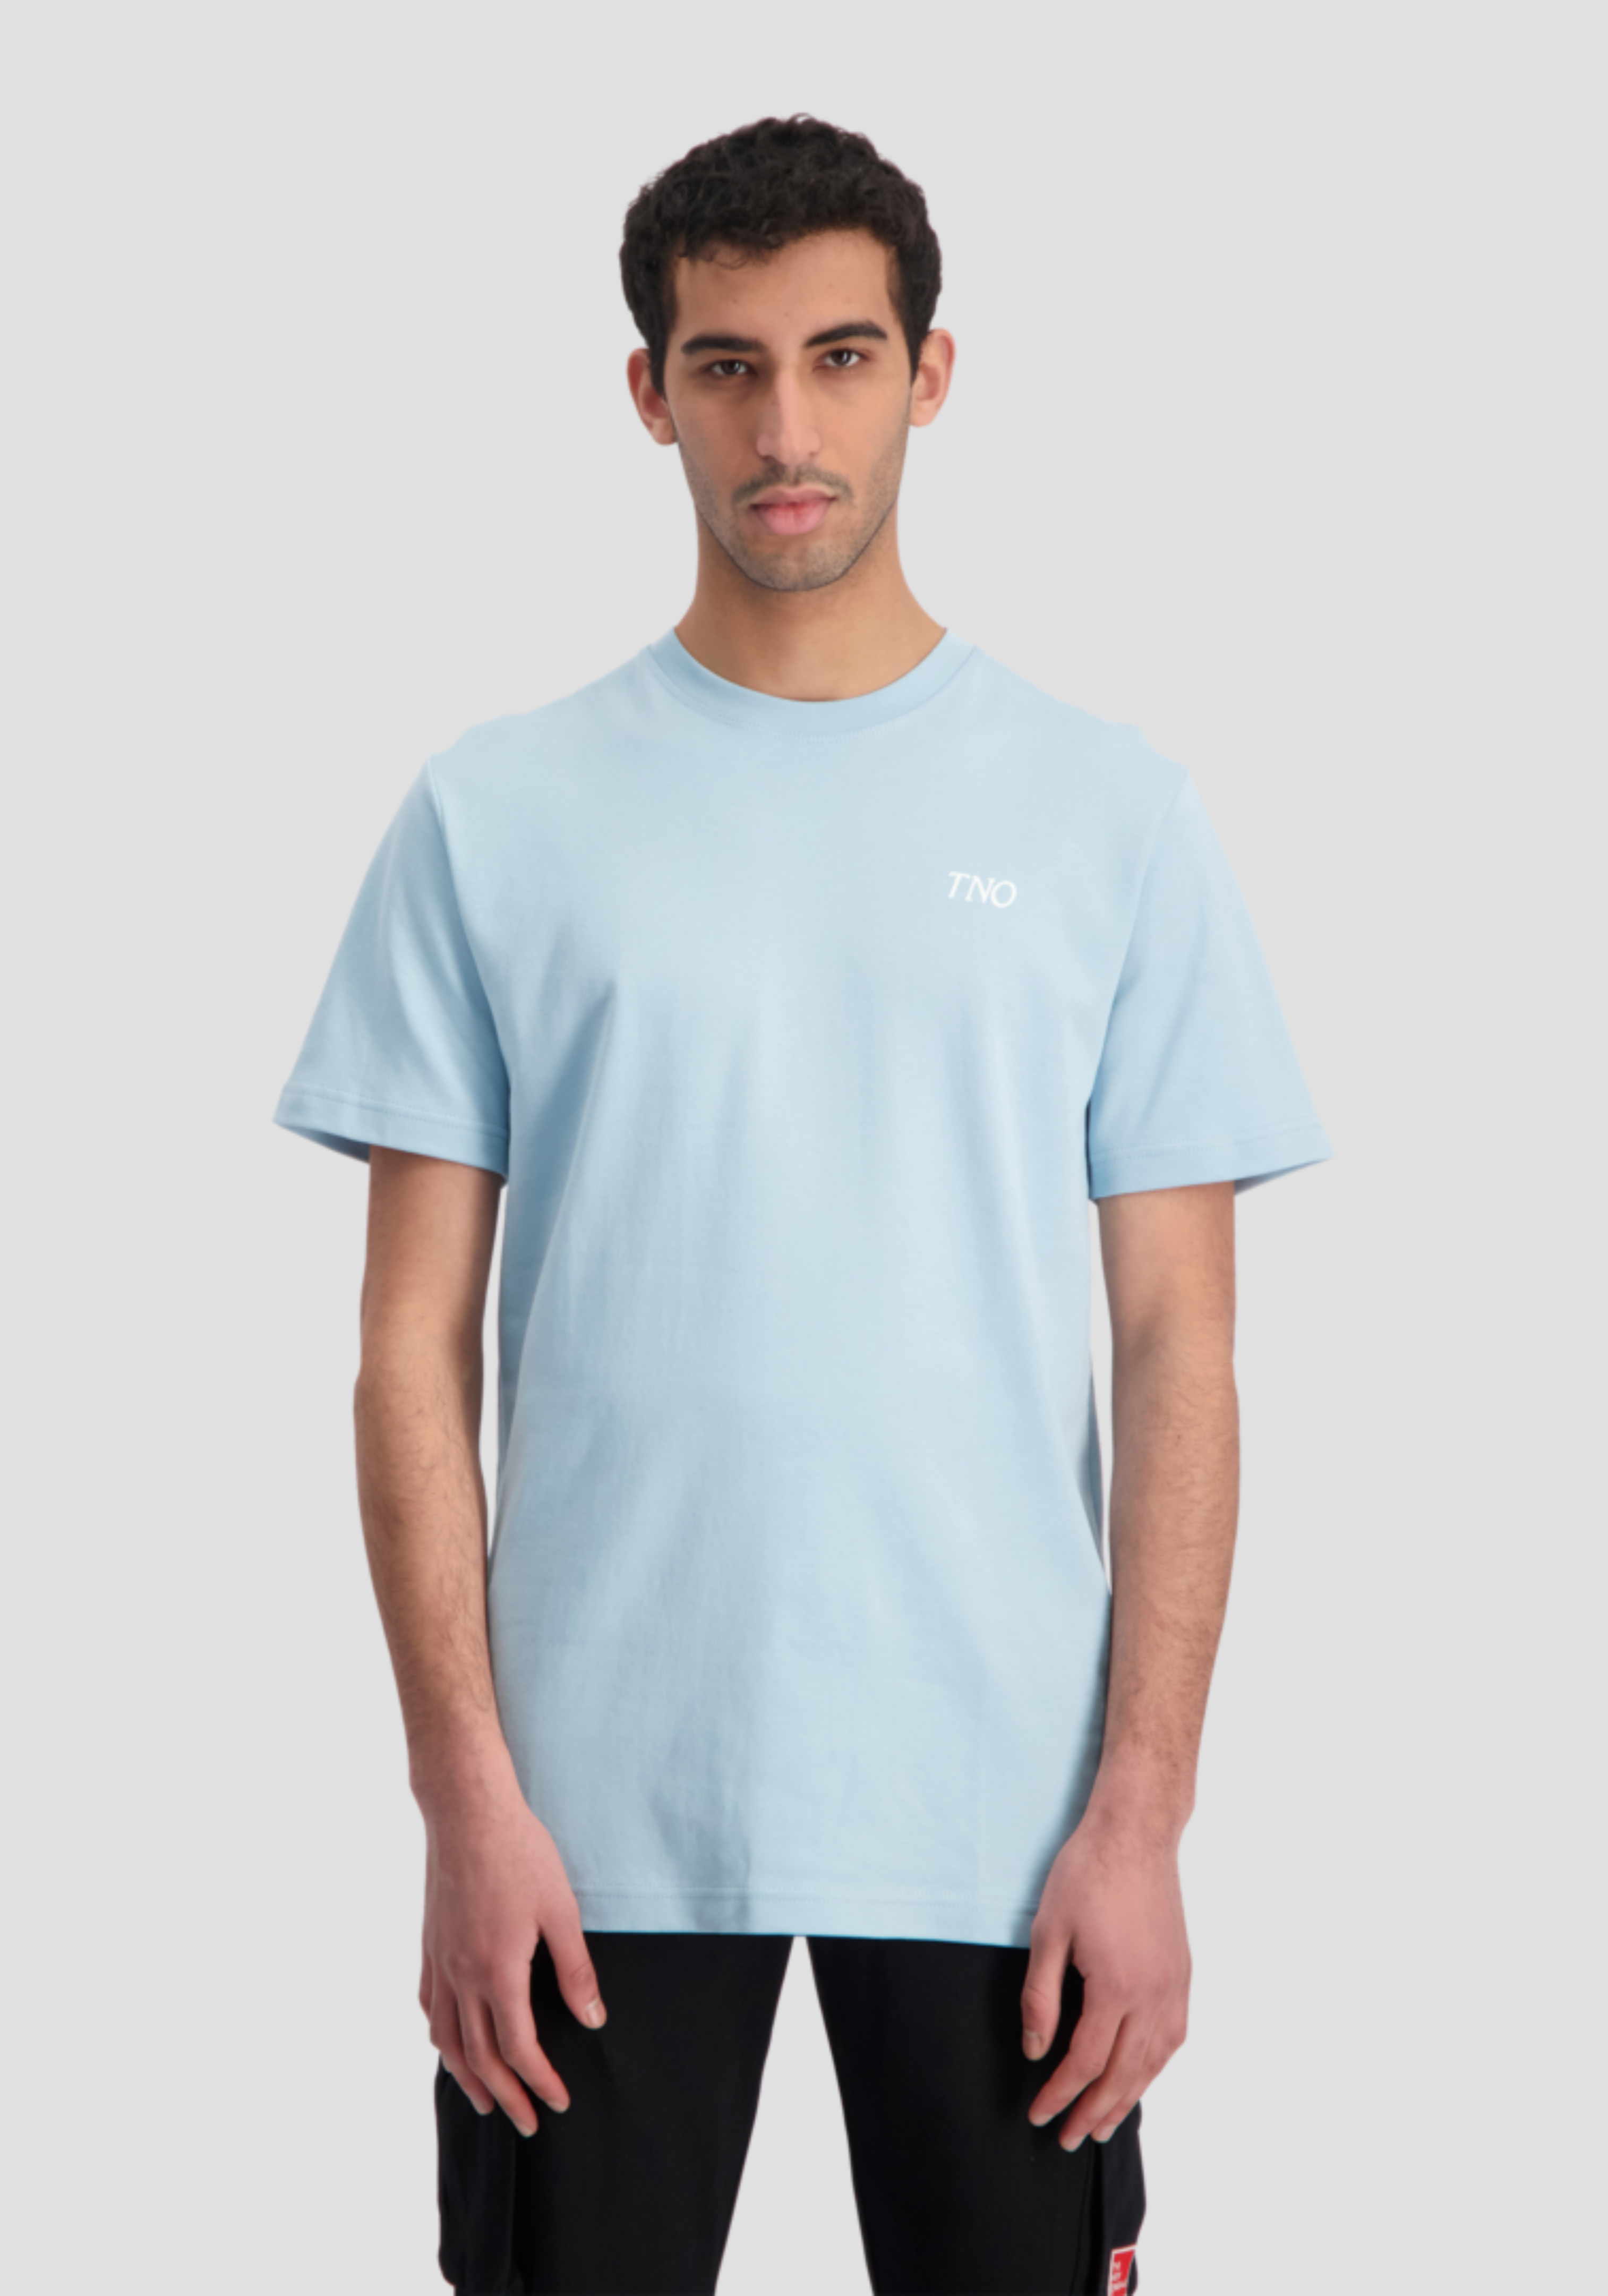 Catna T-Shirt